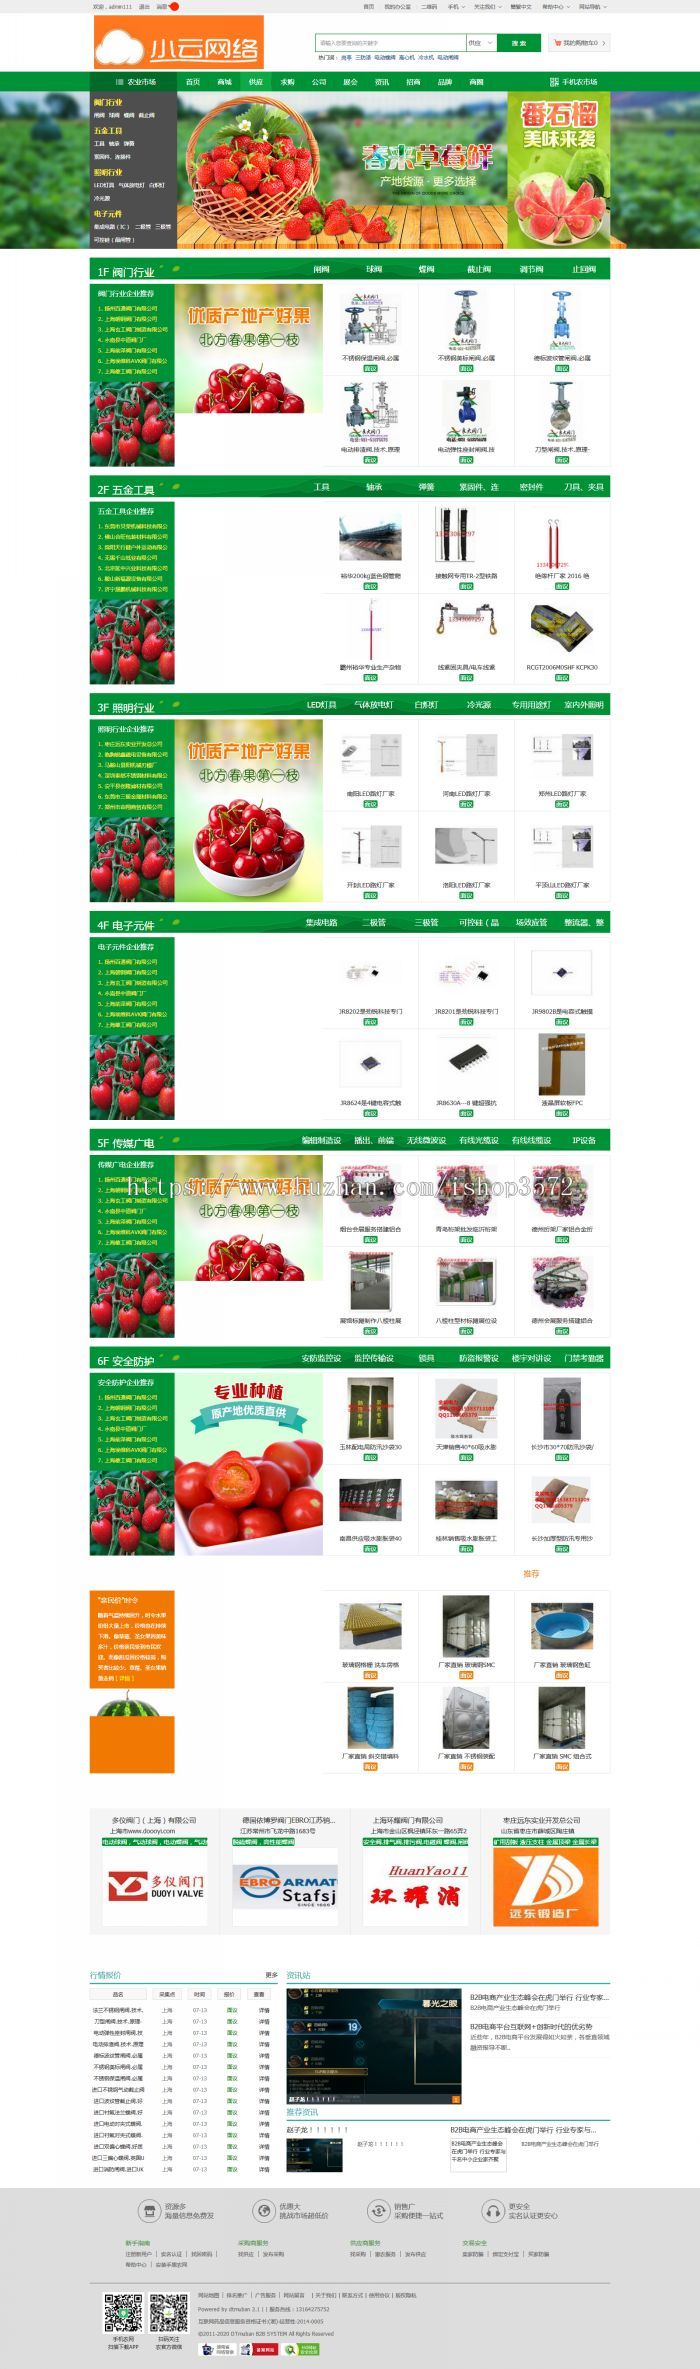 2018行业B2B网站源码destoon7.0绿色仿惠农网模板农业供求信息